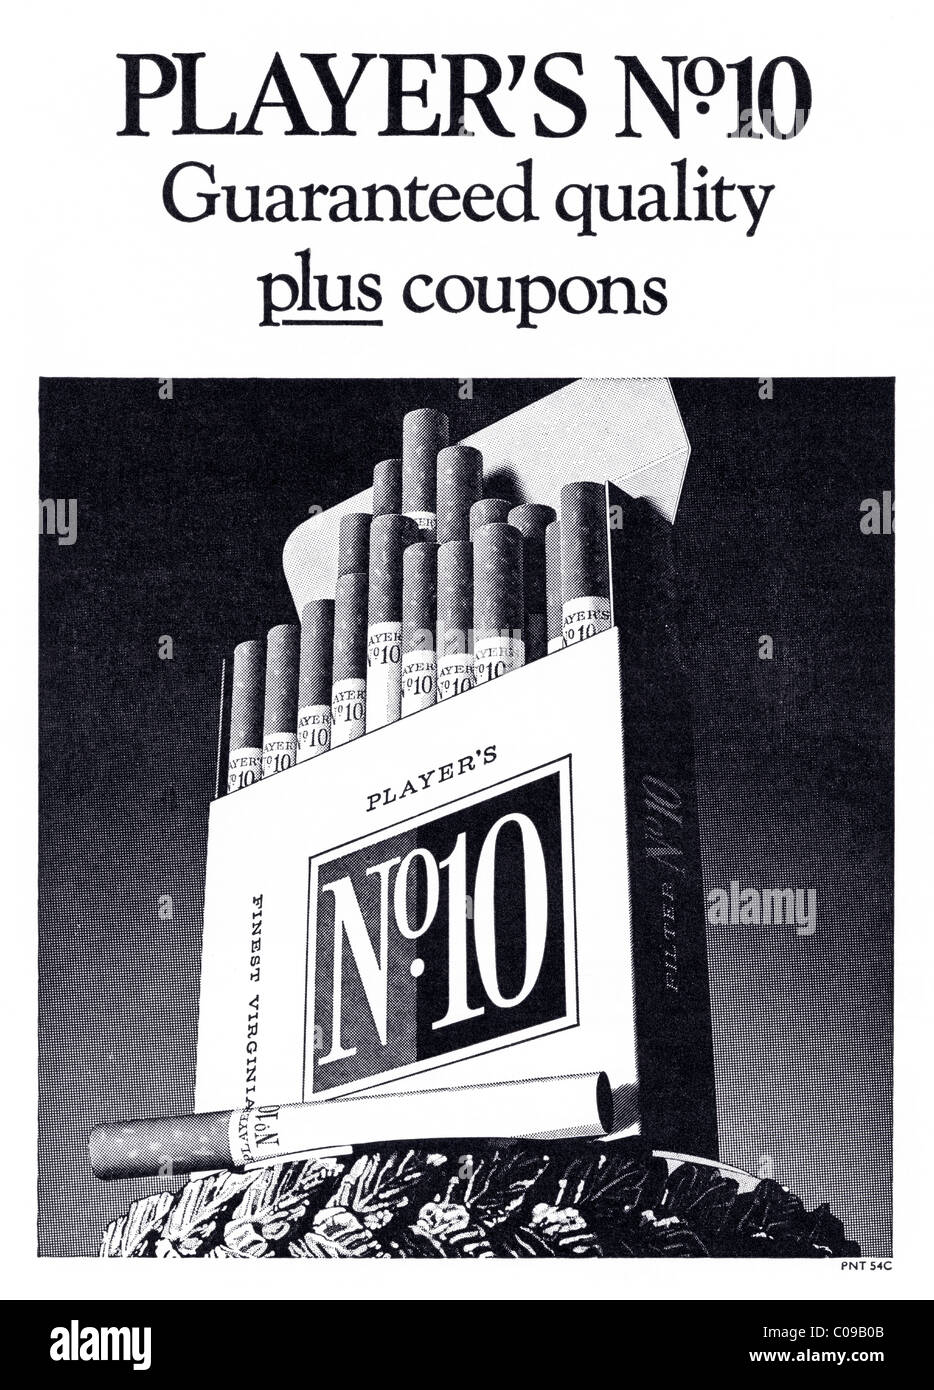 Originale degli anni settanta piena pagina di pubblicità nel programma di calcio per i giocatori N10 le sigarette con filtro Foto Stock